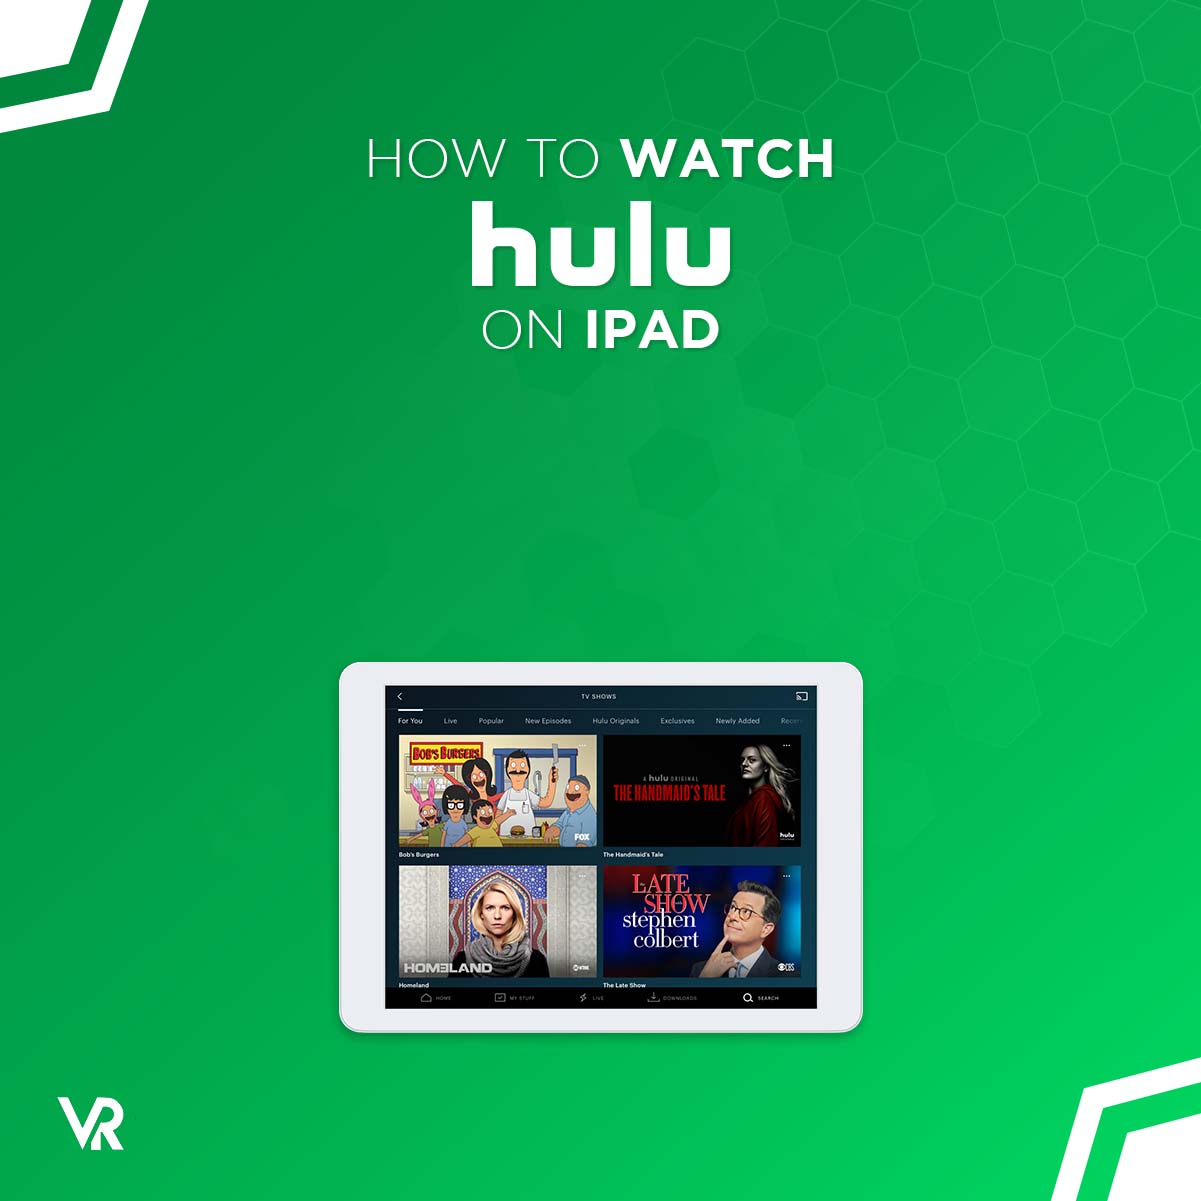 Hvordan får jeg Hulu til å jobbe med iPad -en min?